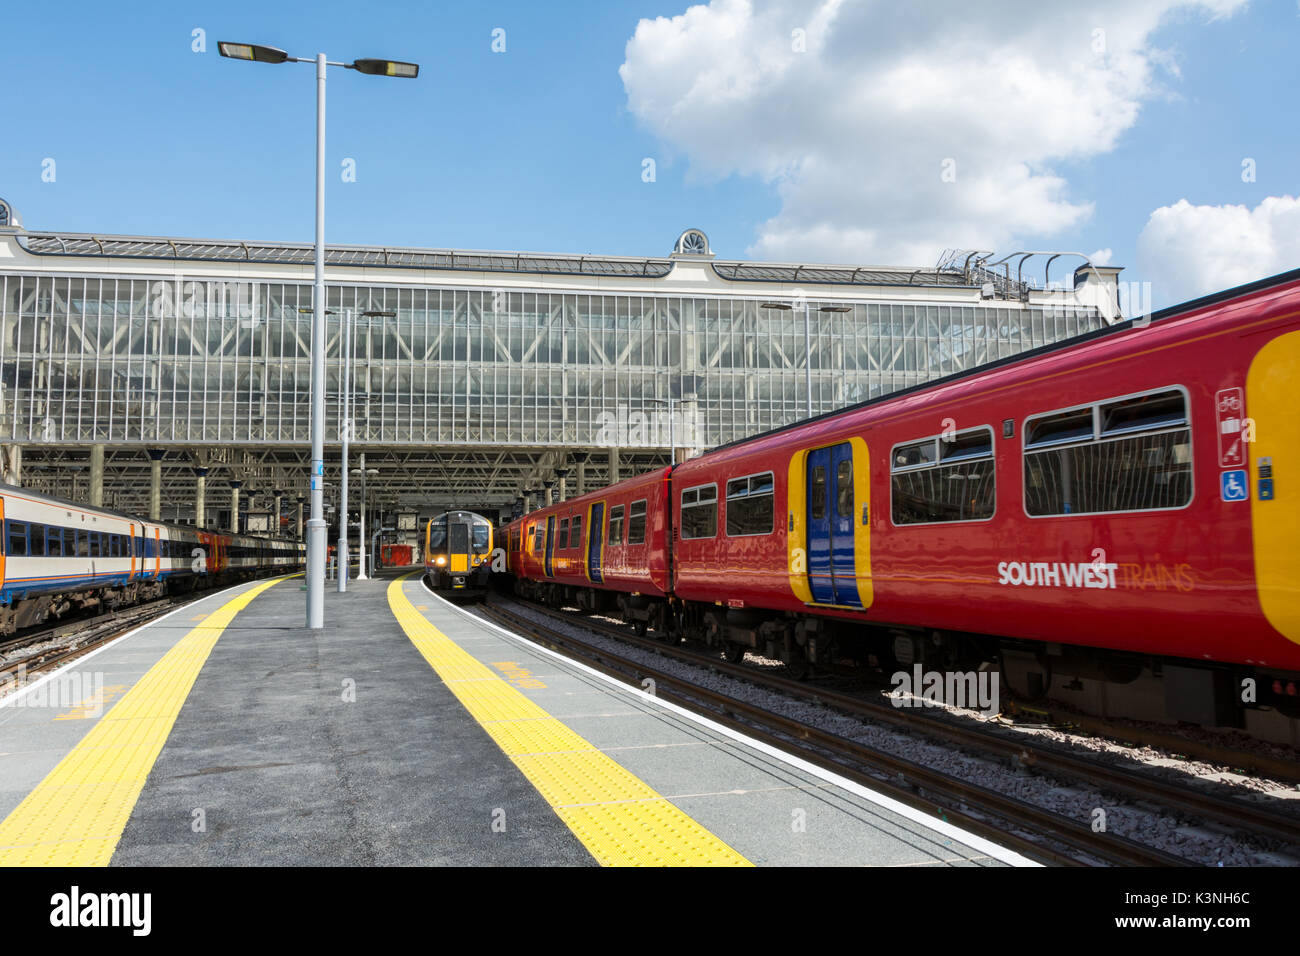 Le nuove piattaforme più a Londra la stazione di Waterloo, Regno Unito Foto Stock